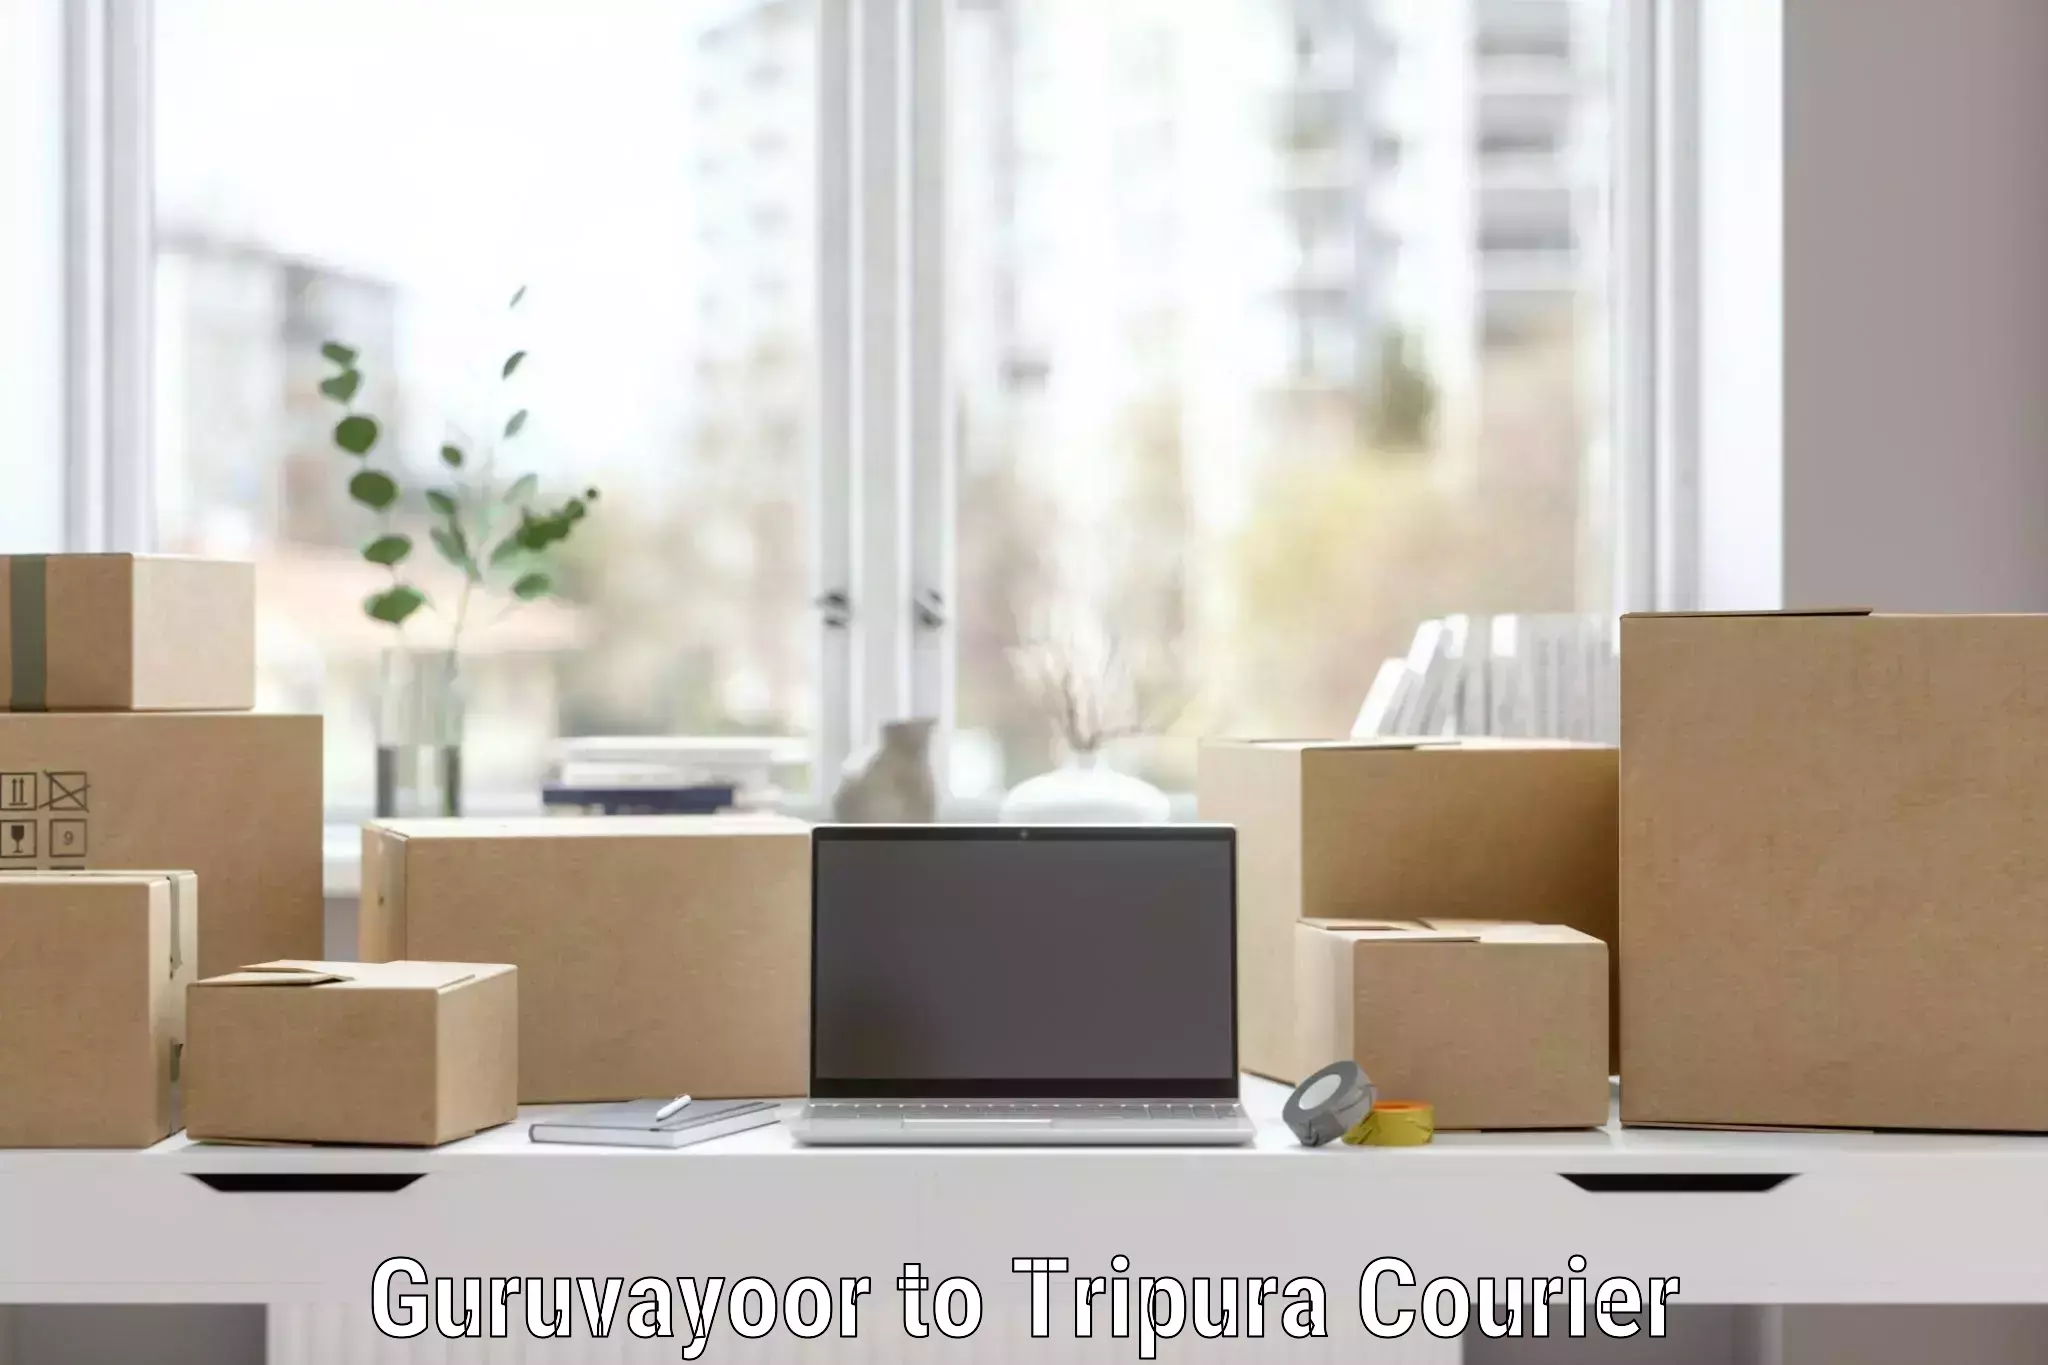 Furniture relocation experts Guruvayoor to Tripura